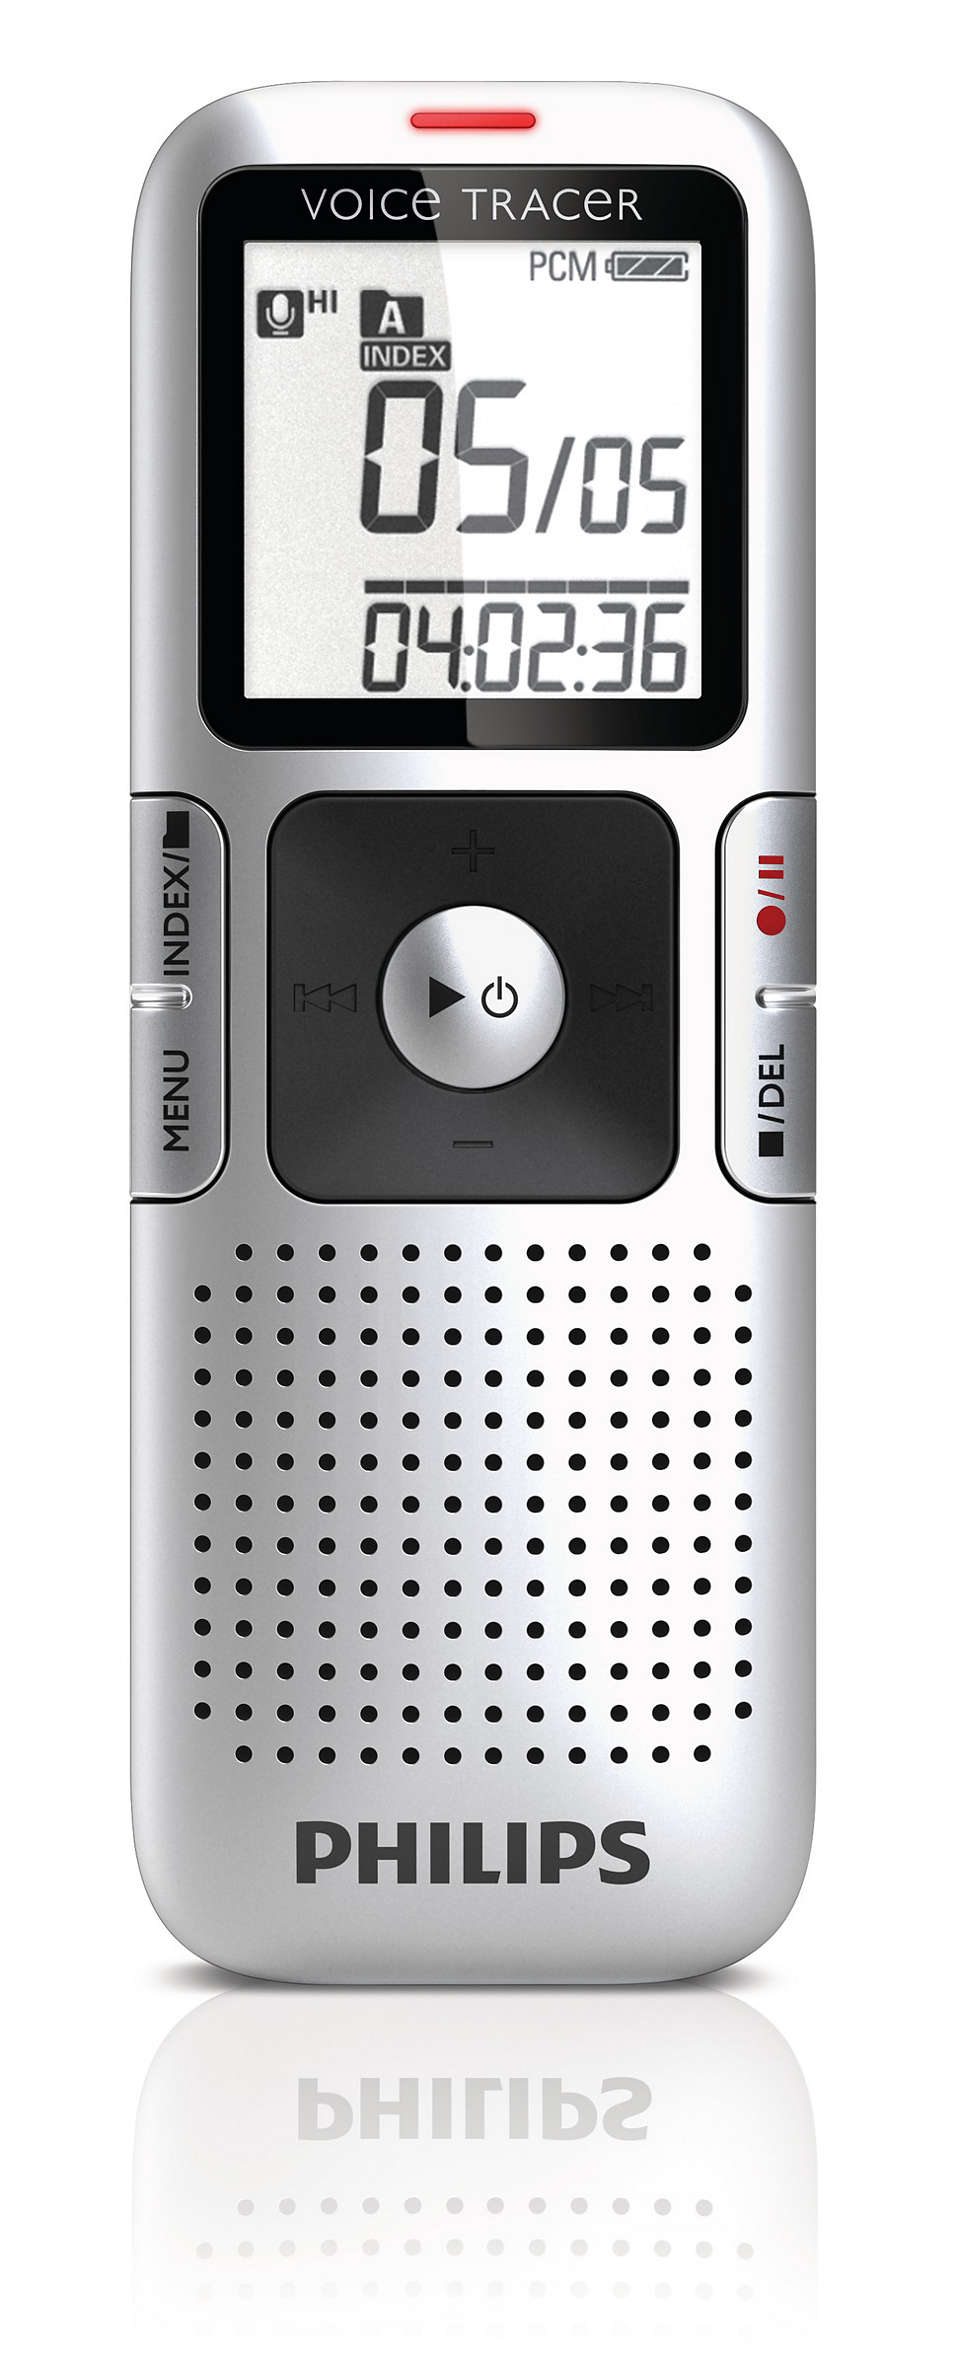 Диктофон Philips. Philips Voice Tracer. Филипс диктофон 2гб. Модели диктофона Philips Voice Tracer.